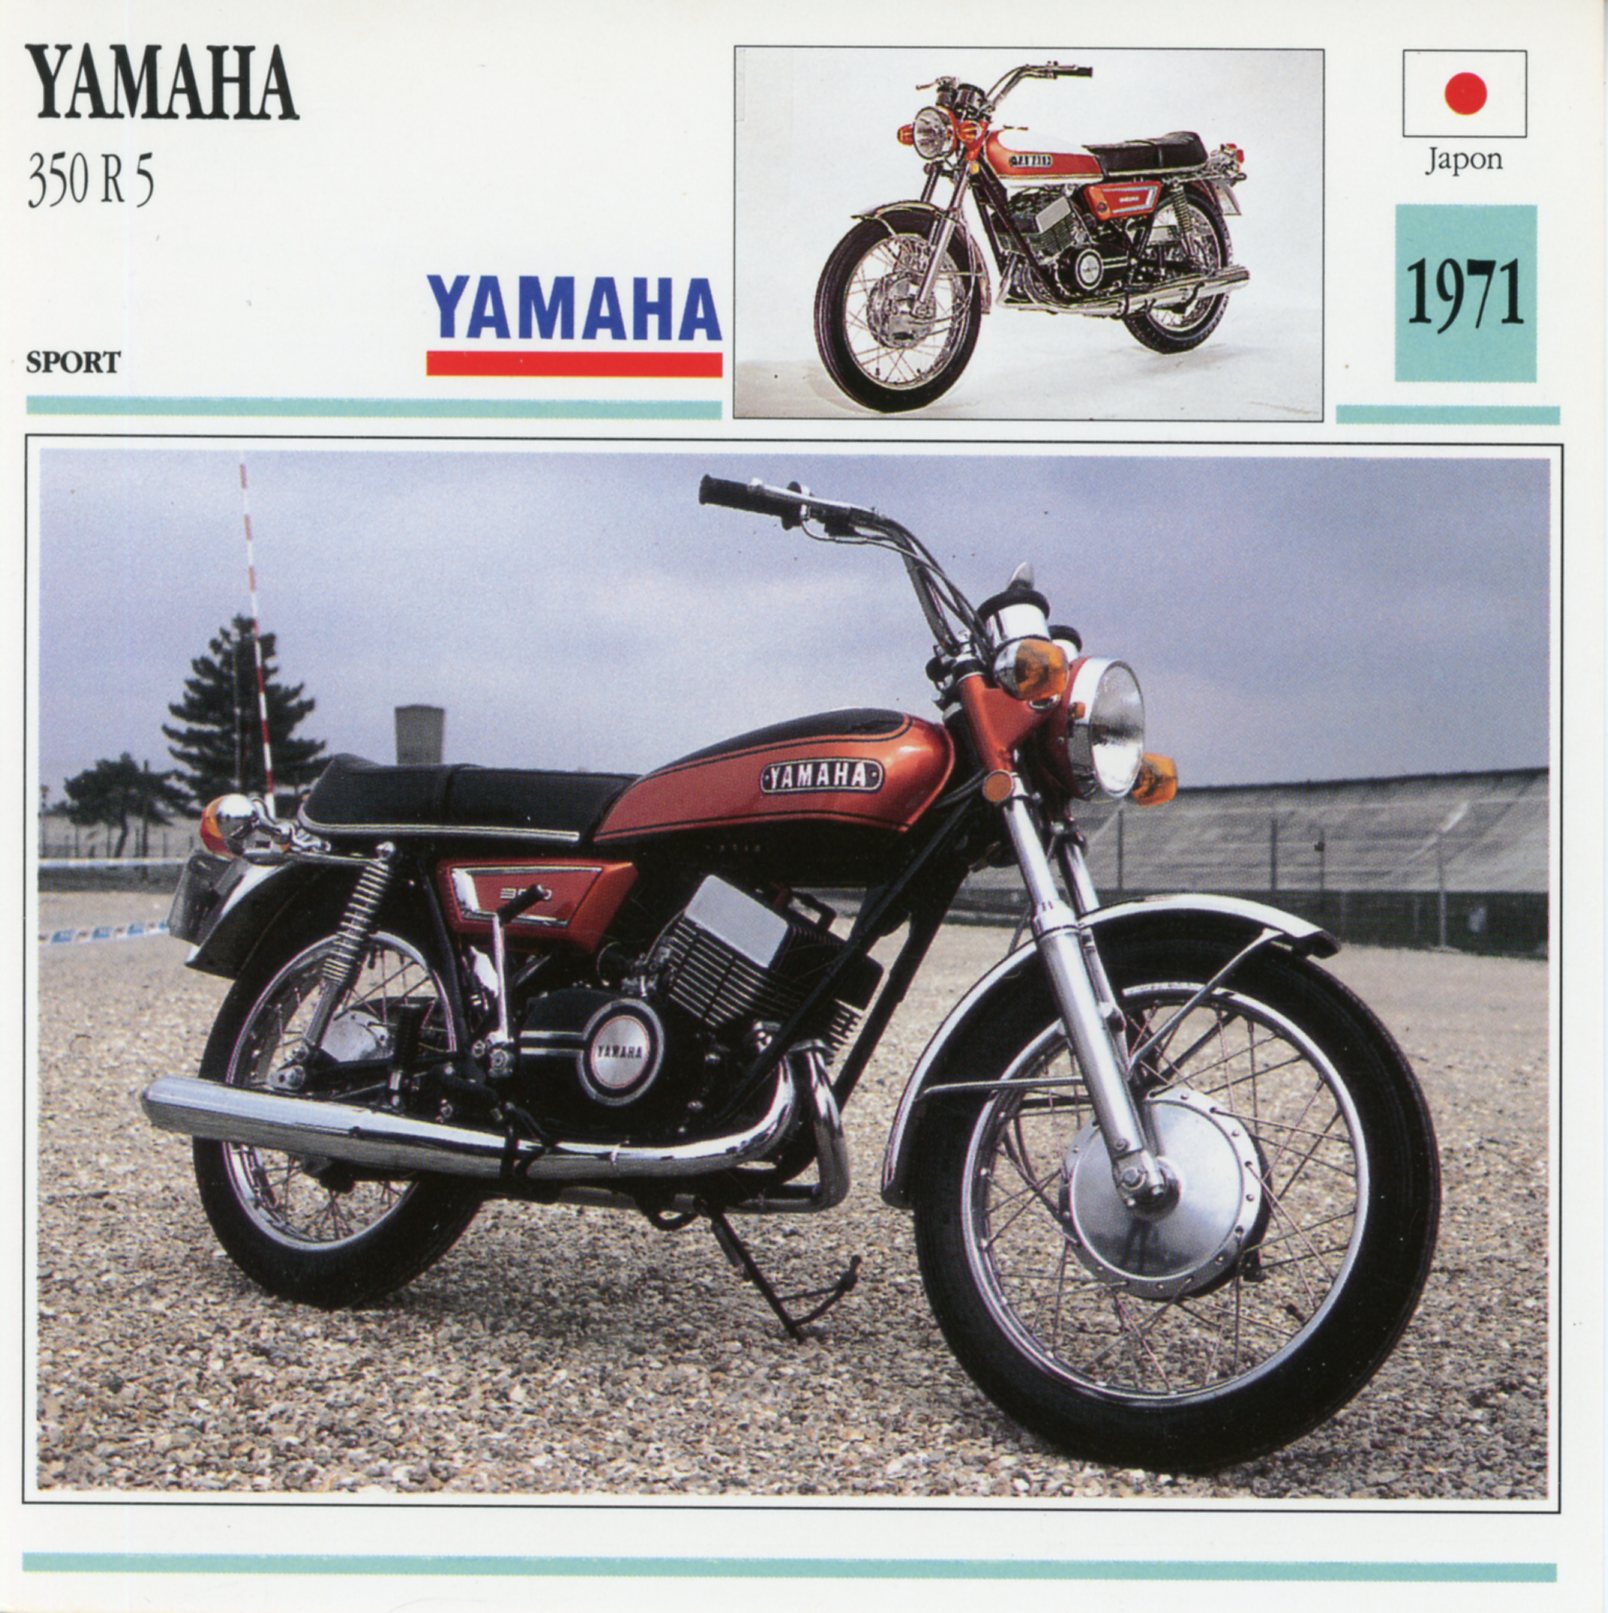 FICHE-MOTO-YAMAHA-350-R5-1971-LEMASTERBROCKERS-littérature-brochure